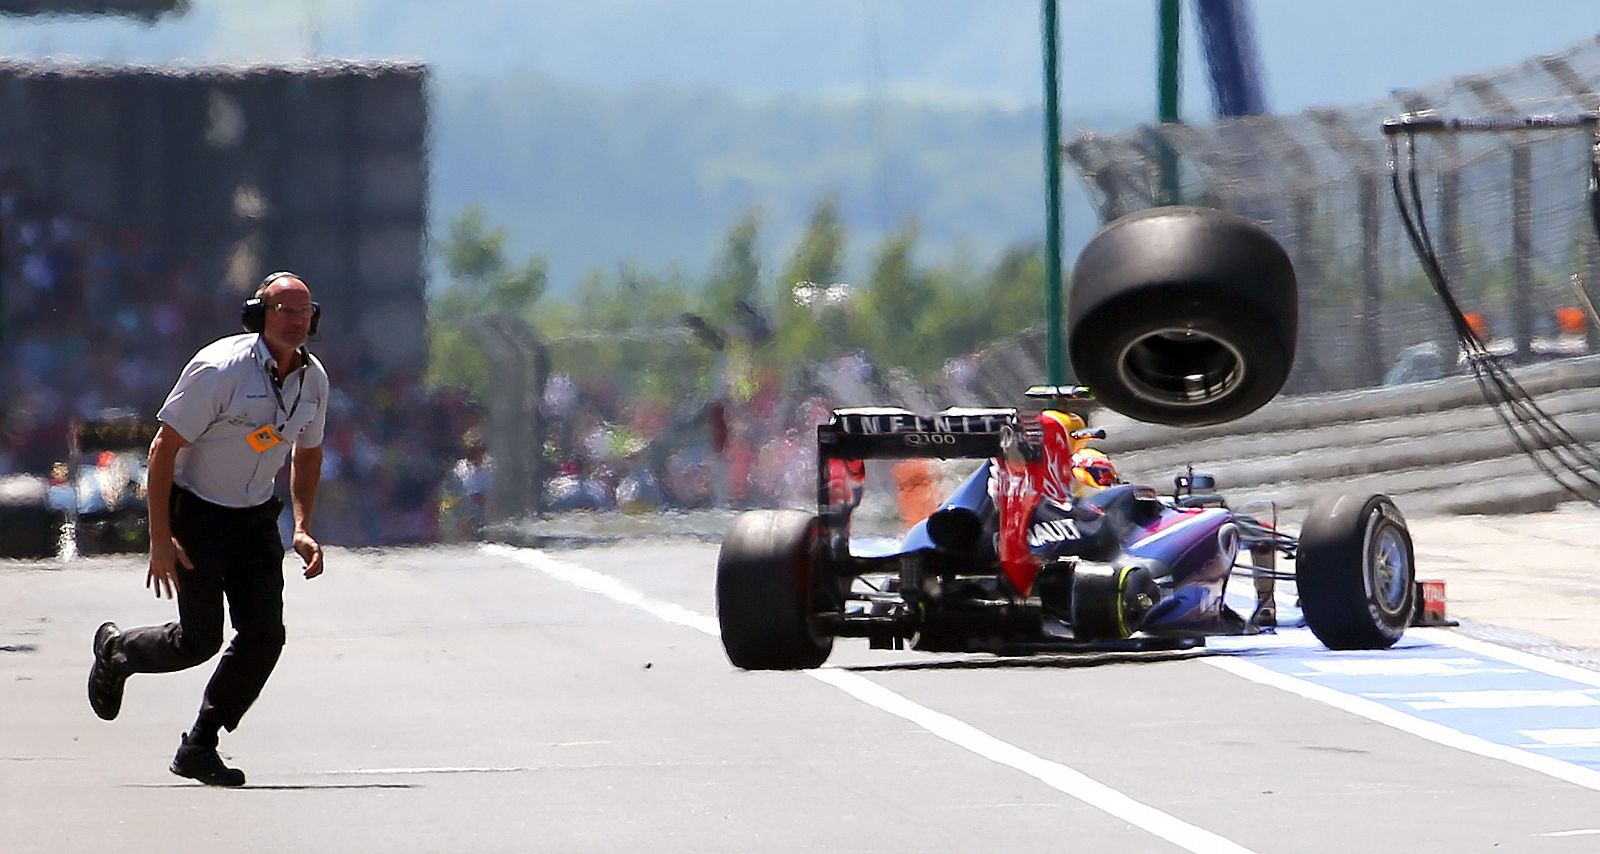 La rueda trasera derecha sale despedida del monoplaza de Mark Webber en Alemania